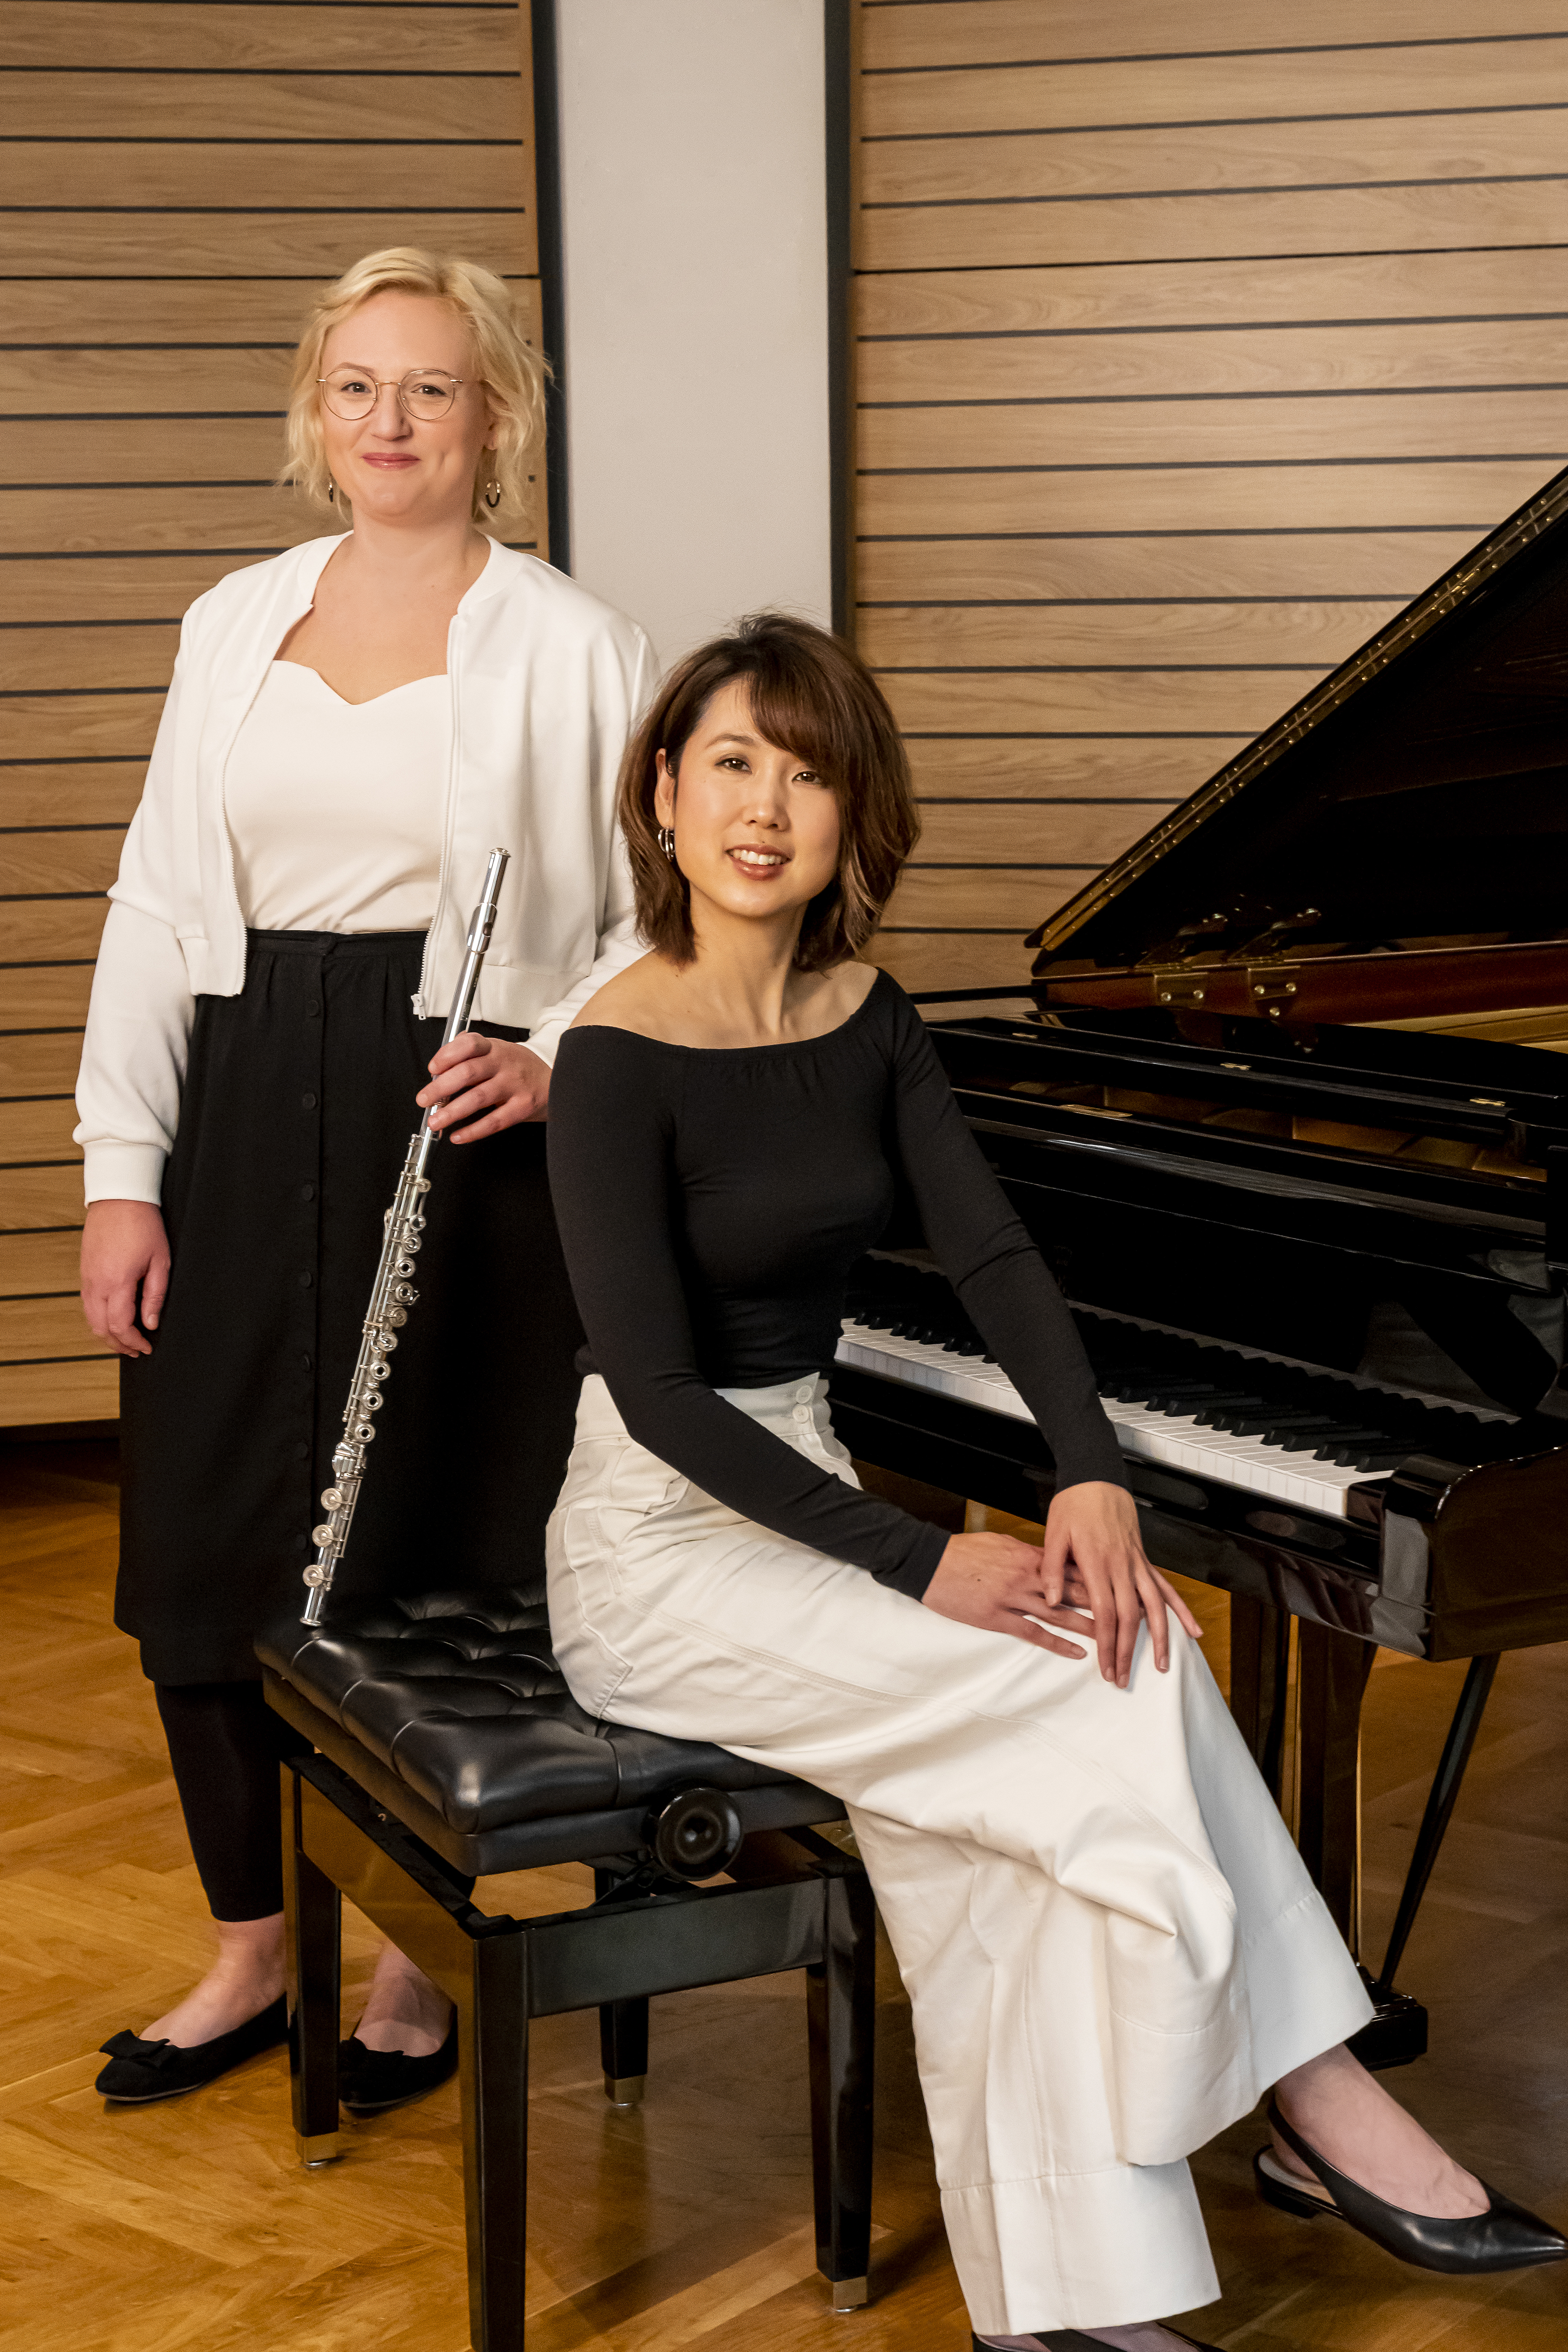 Mari Inoue am Klavier sitzend und Katharina Sames stehend daneben mit Querflöte in der Hand